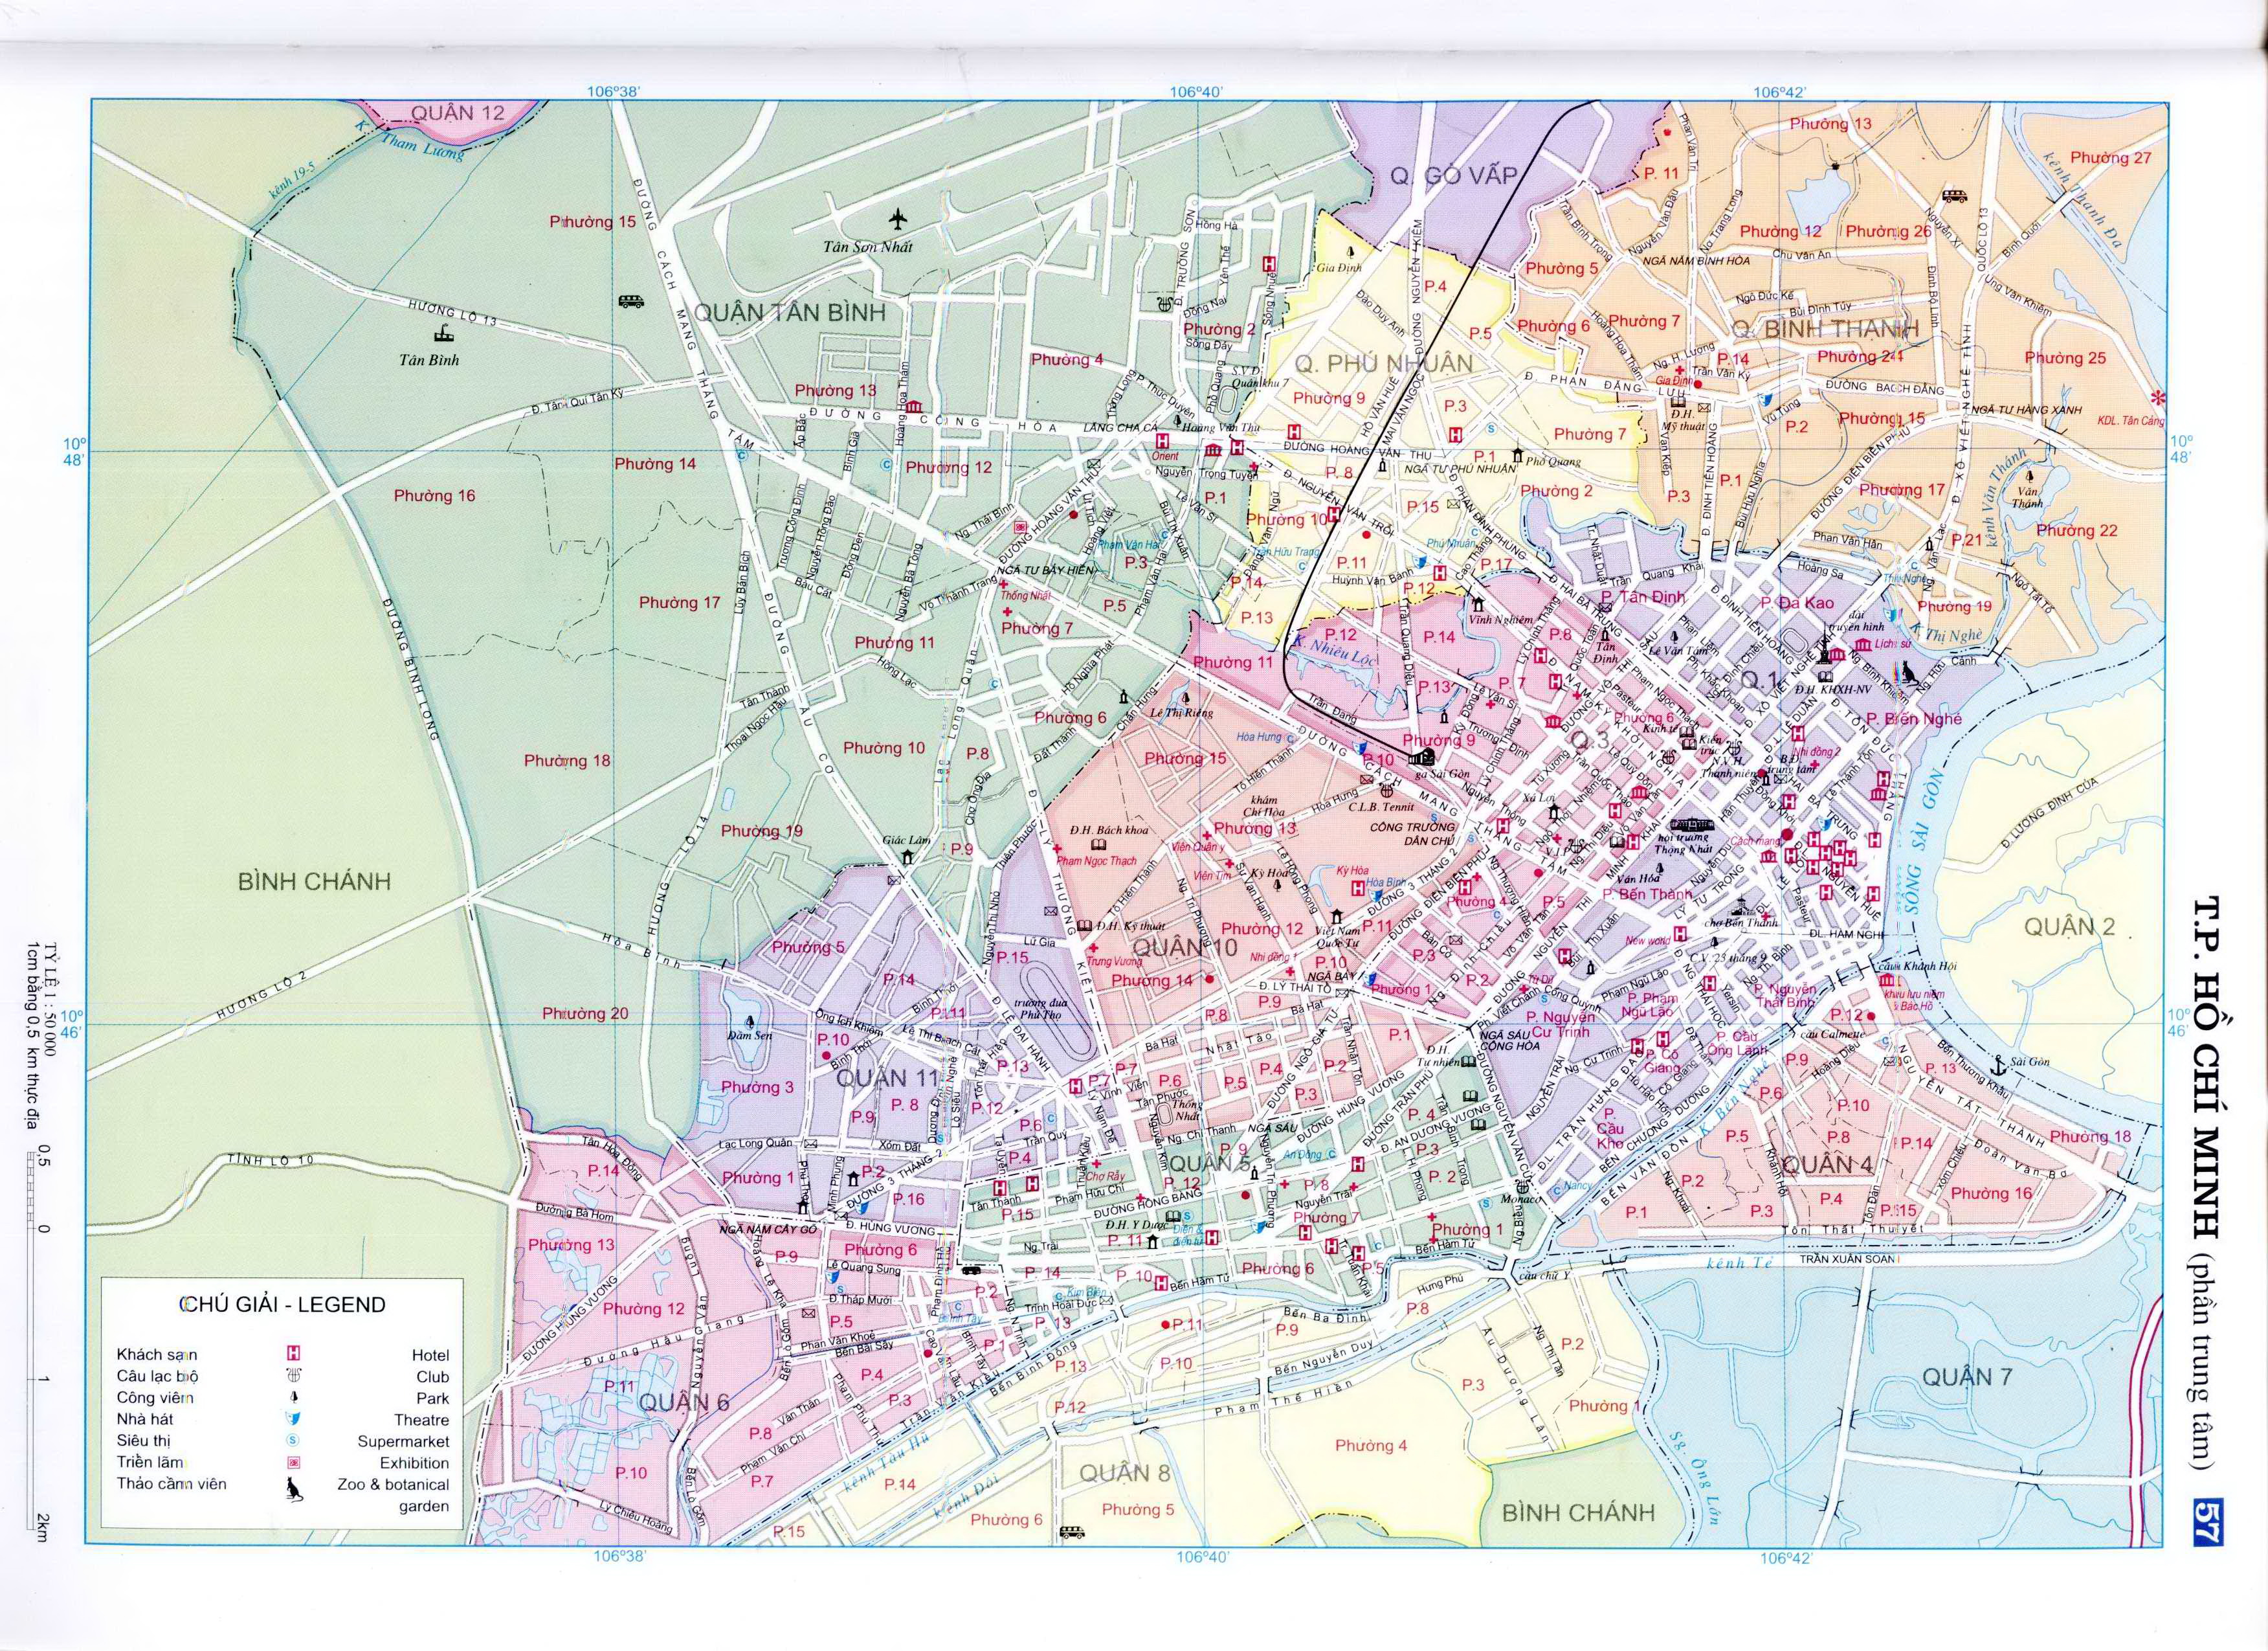 Sơ đồ các quận của thành phố Hồ Chí Minh năm 2020